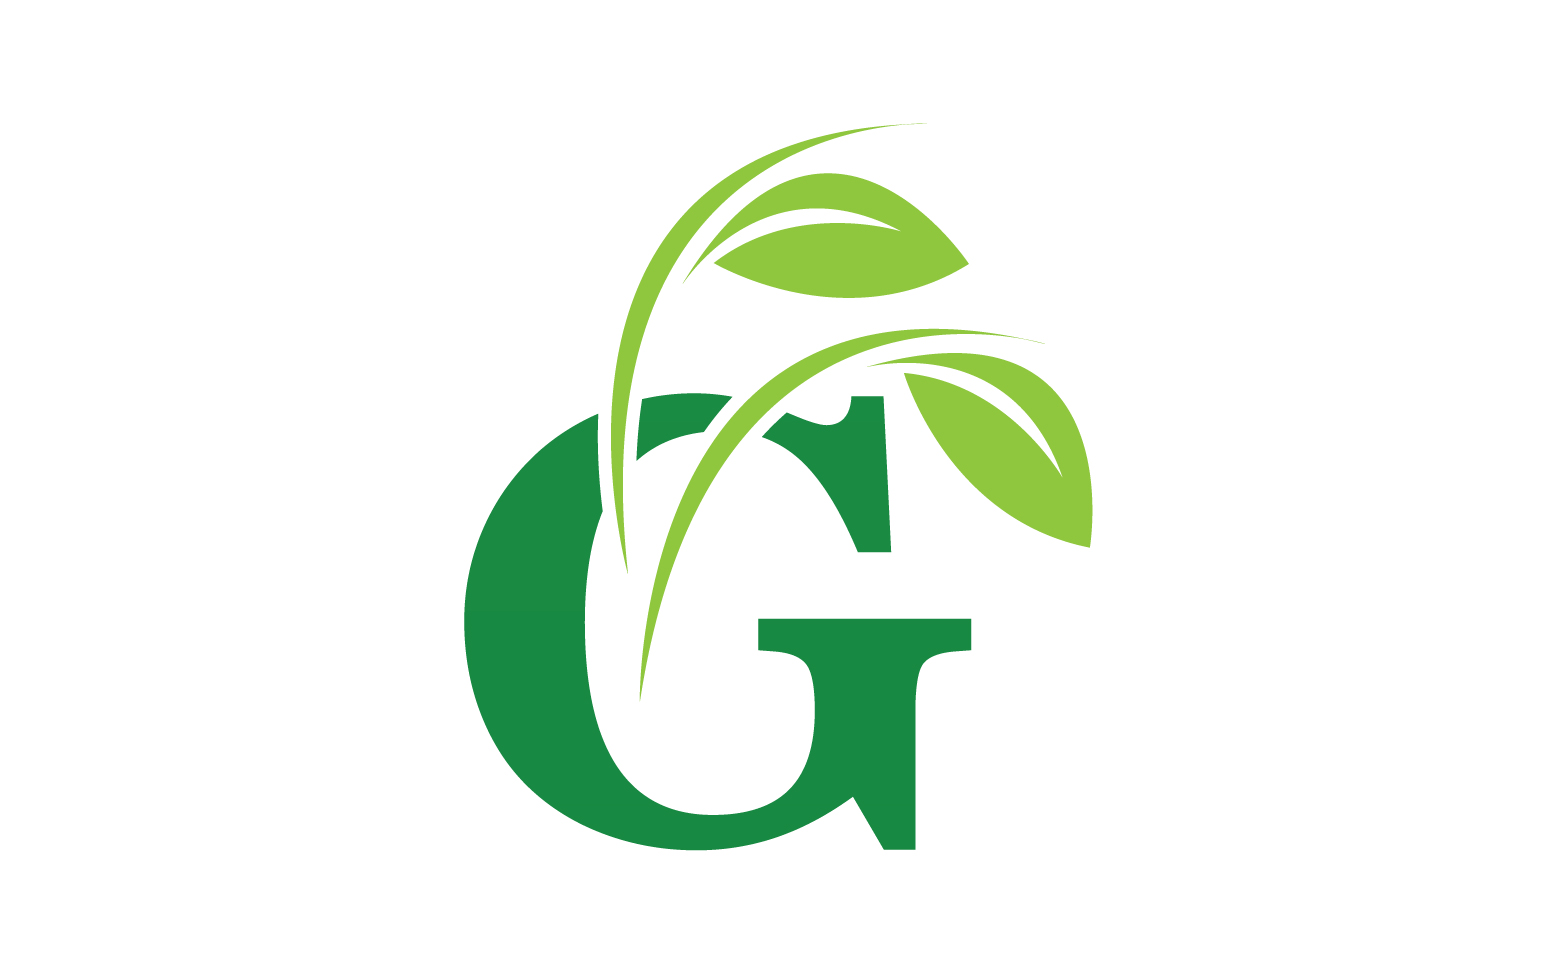 G letter leaf green logo icon version v50